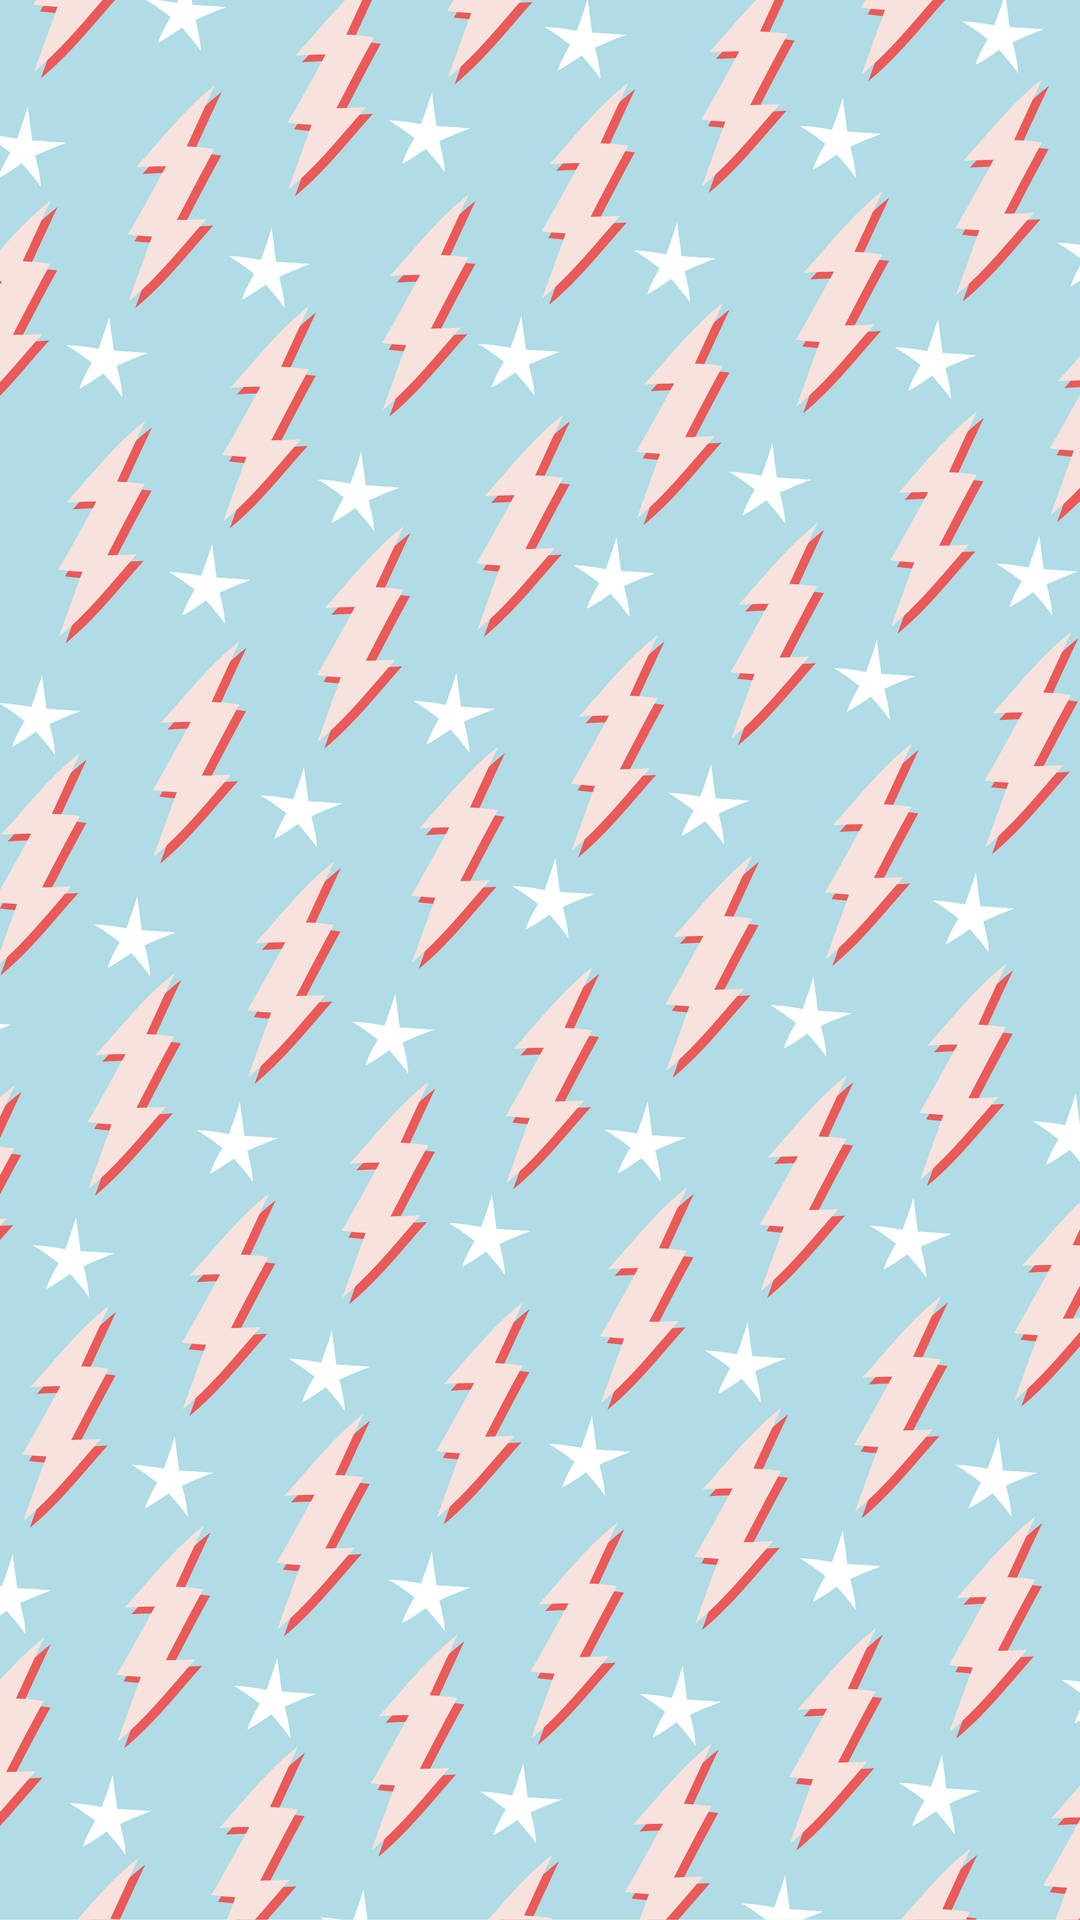 Preppy Lightning Bolt Pattern Wallpaper